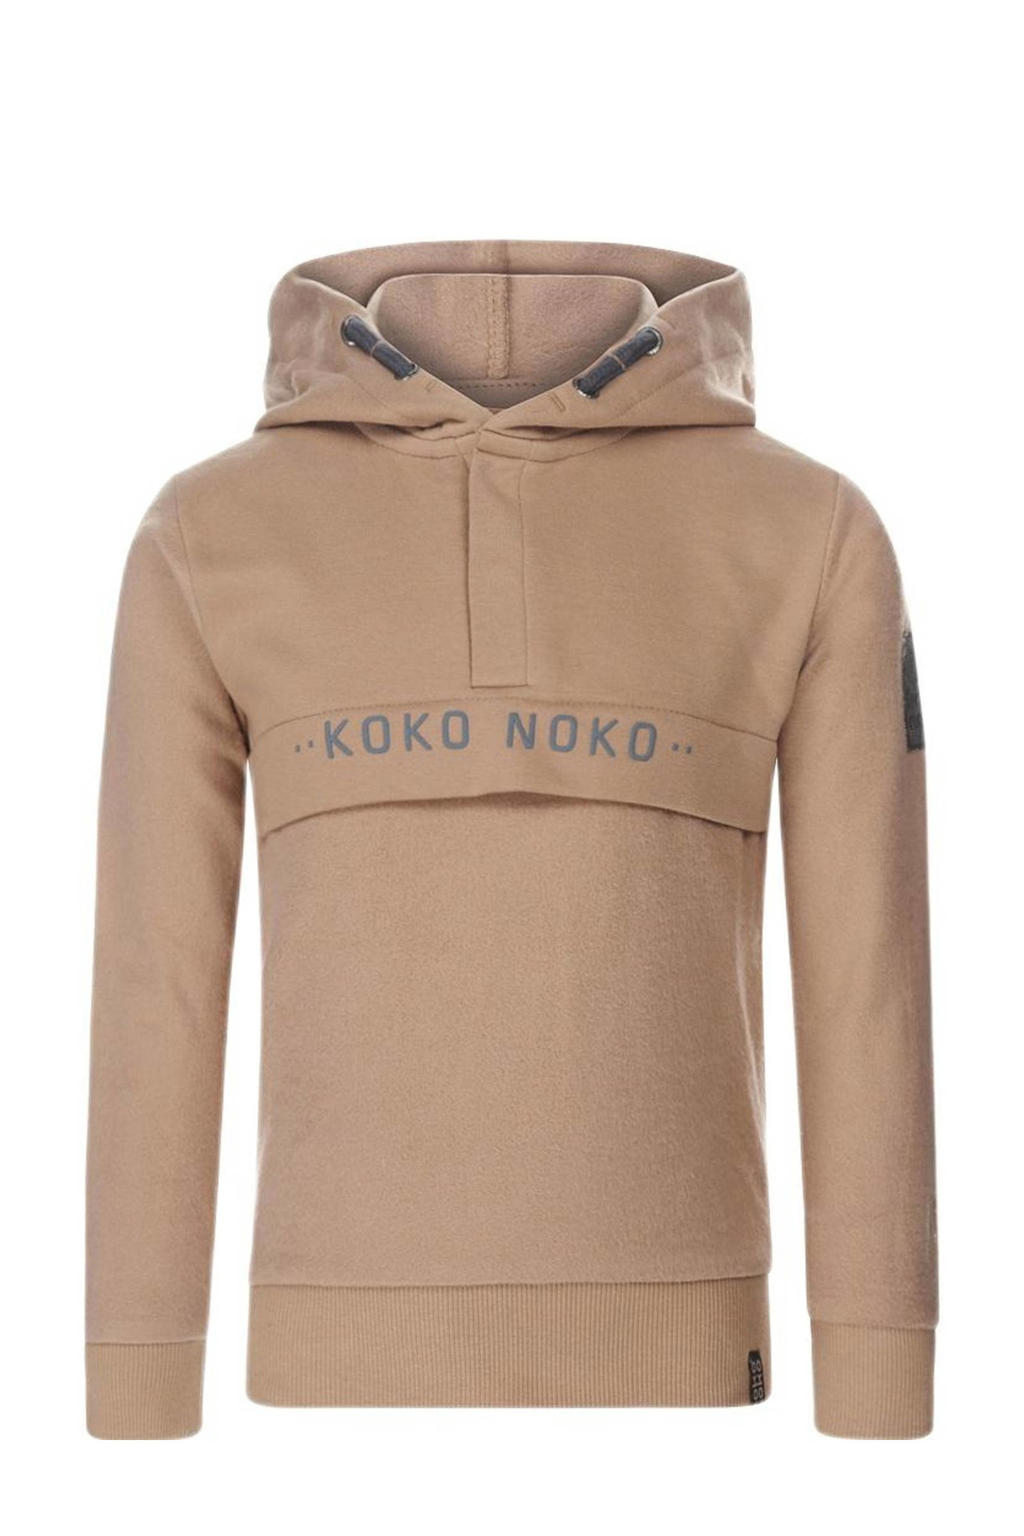 Zandkleurige jongens Koko Noko hoodie van sweat materiaal met logo dessin, lange mouwen en capuchon